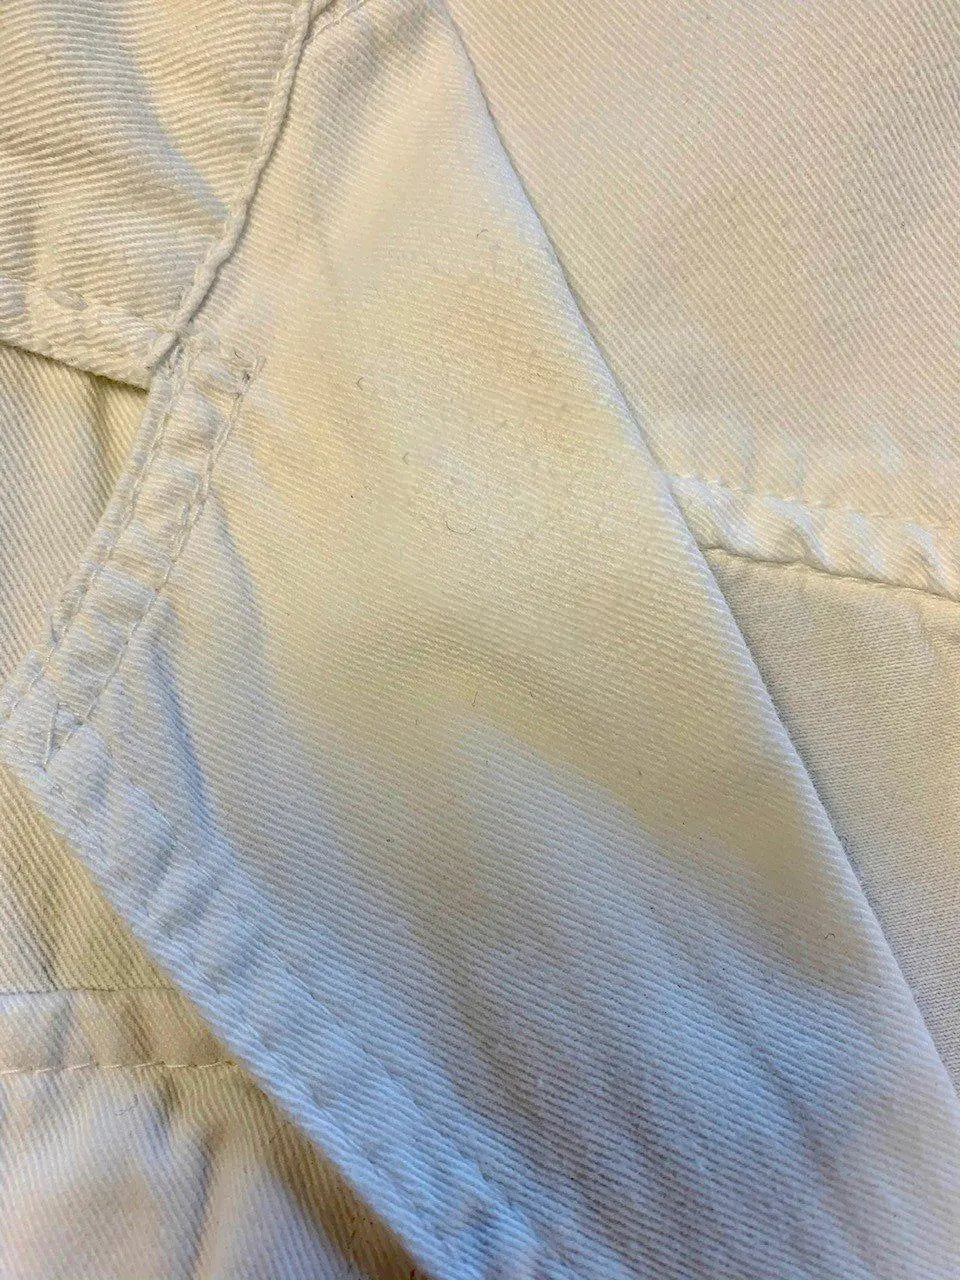 Vinus - Vintage White Denim Jacket- ThriftTale.com - Vintage and second handclothing